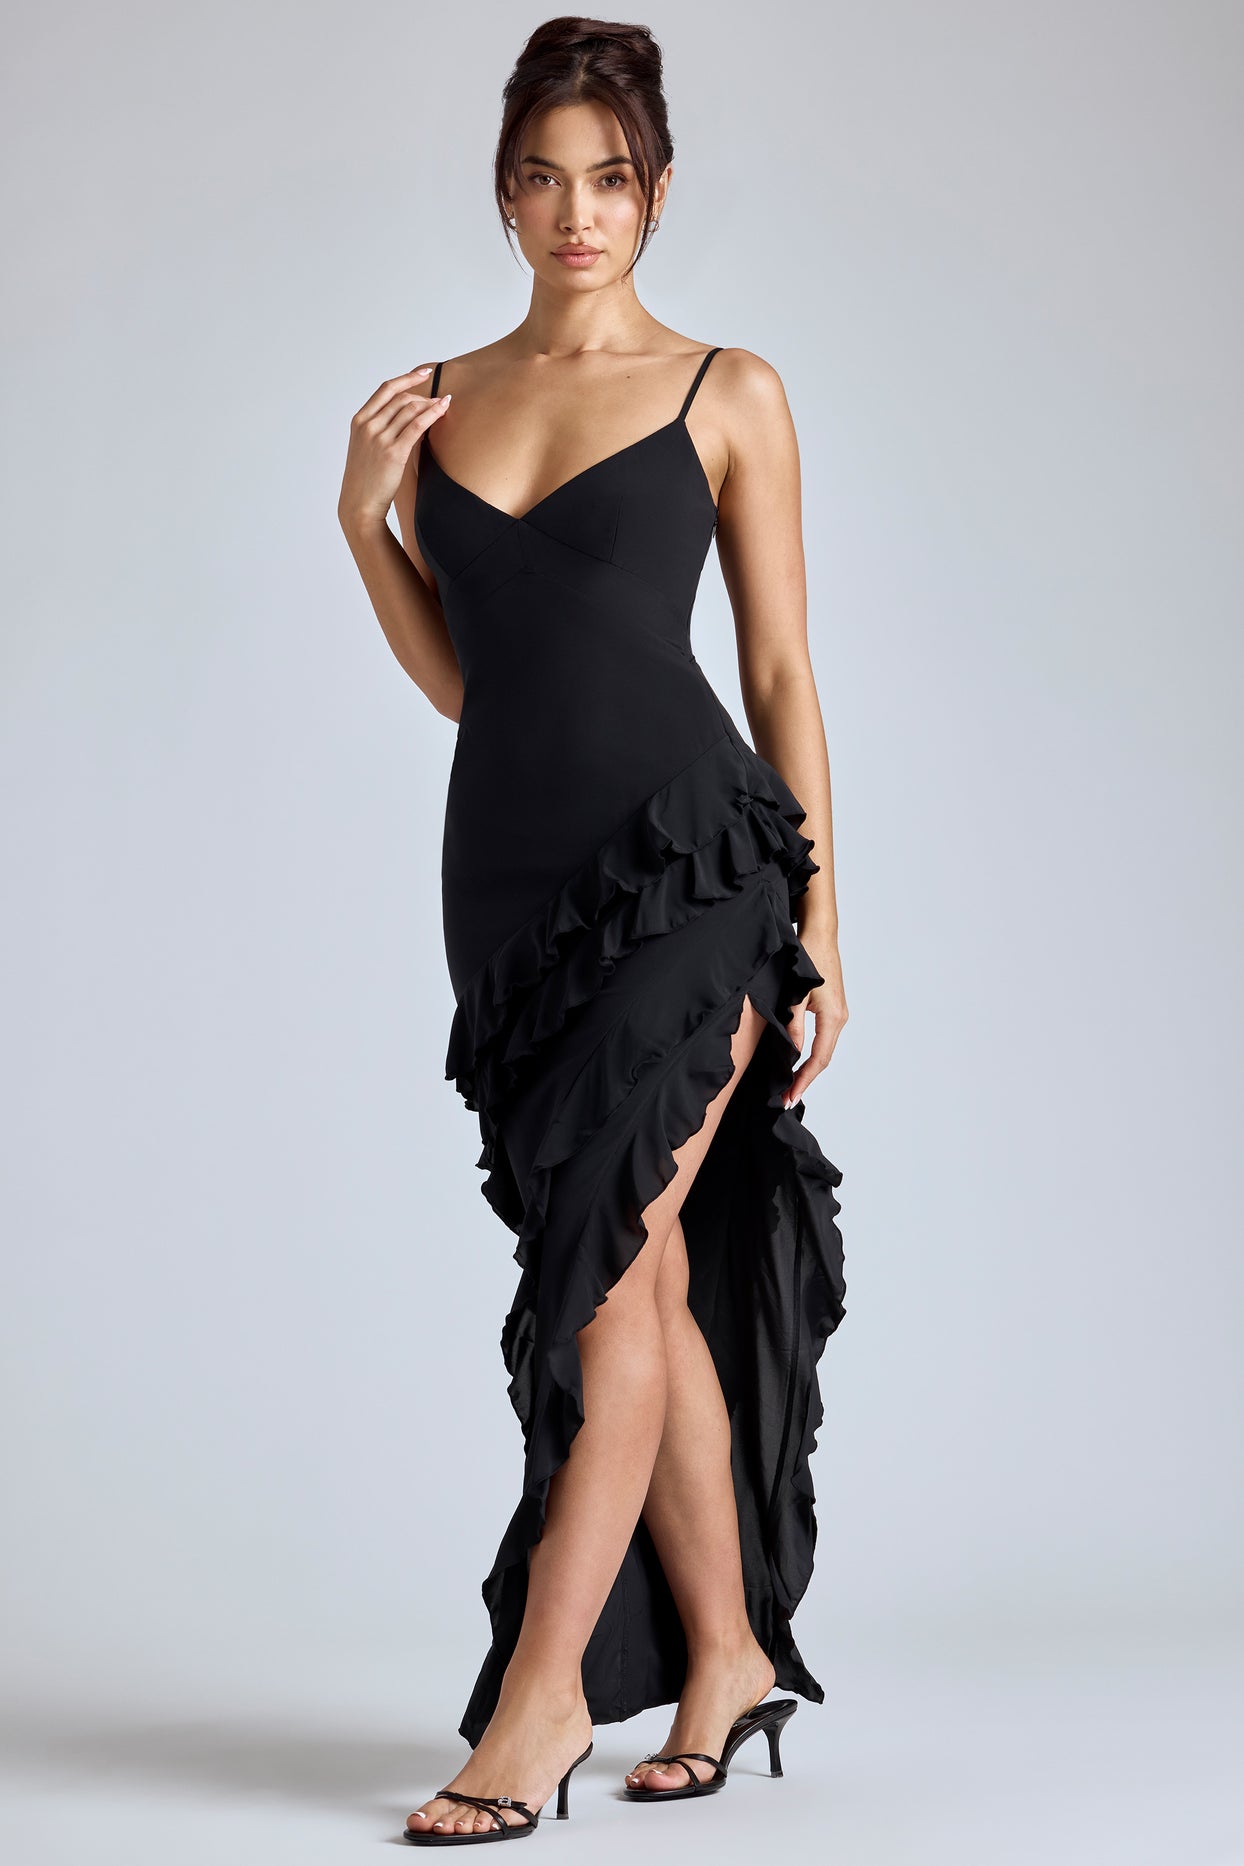 Suknia wieczorowa z panelami, falbaną w kolorze czarnym